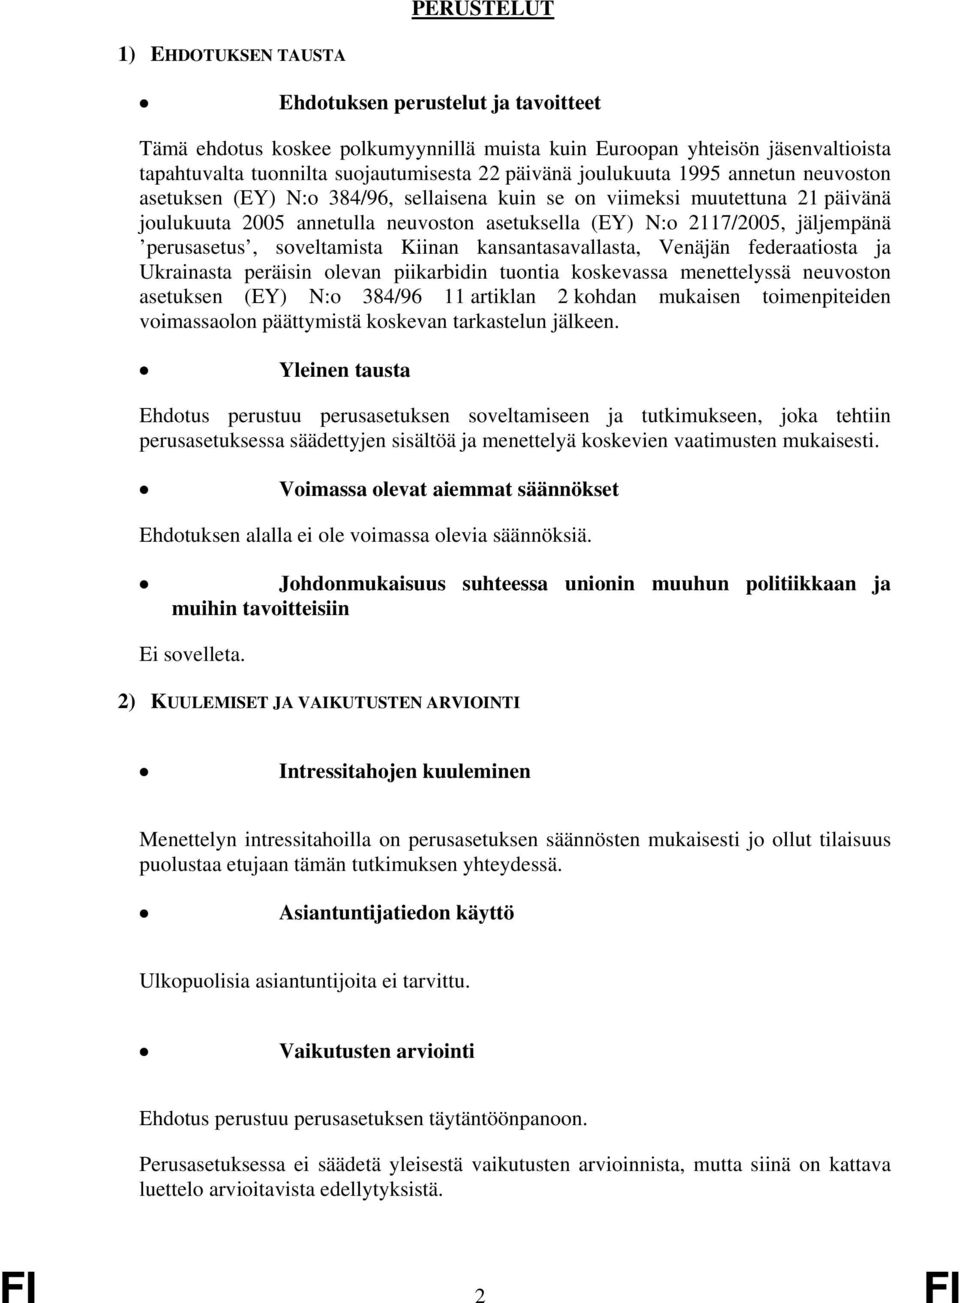 perusasetus, soveltamista Kiinan kansantasavallasta, Venäjän federaatiosta ja Ukrainasta peräisin olevan piikarbidin tuontia koskevassa menettelyssä neuvoston asetuksen (EY) N:o 384/96 11 artiklan 2